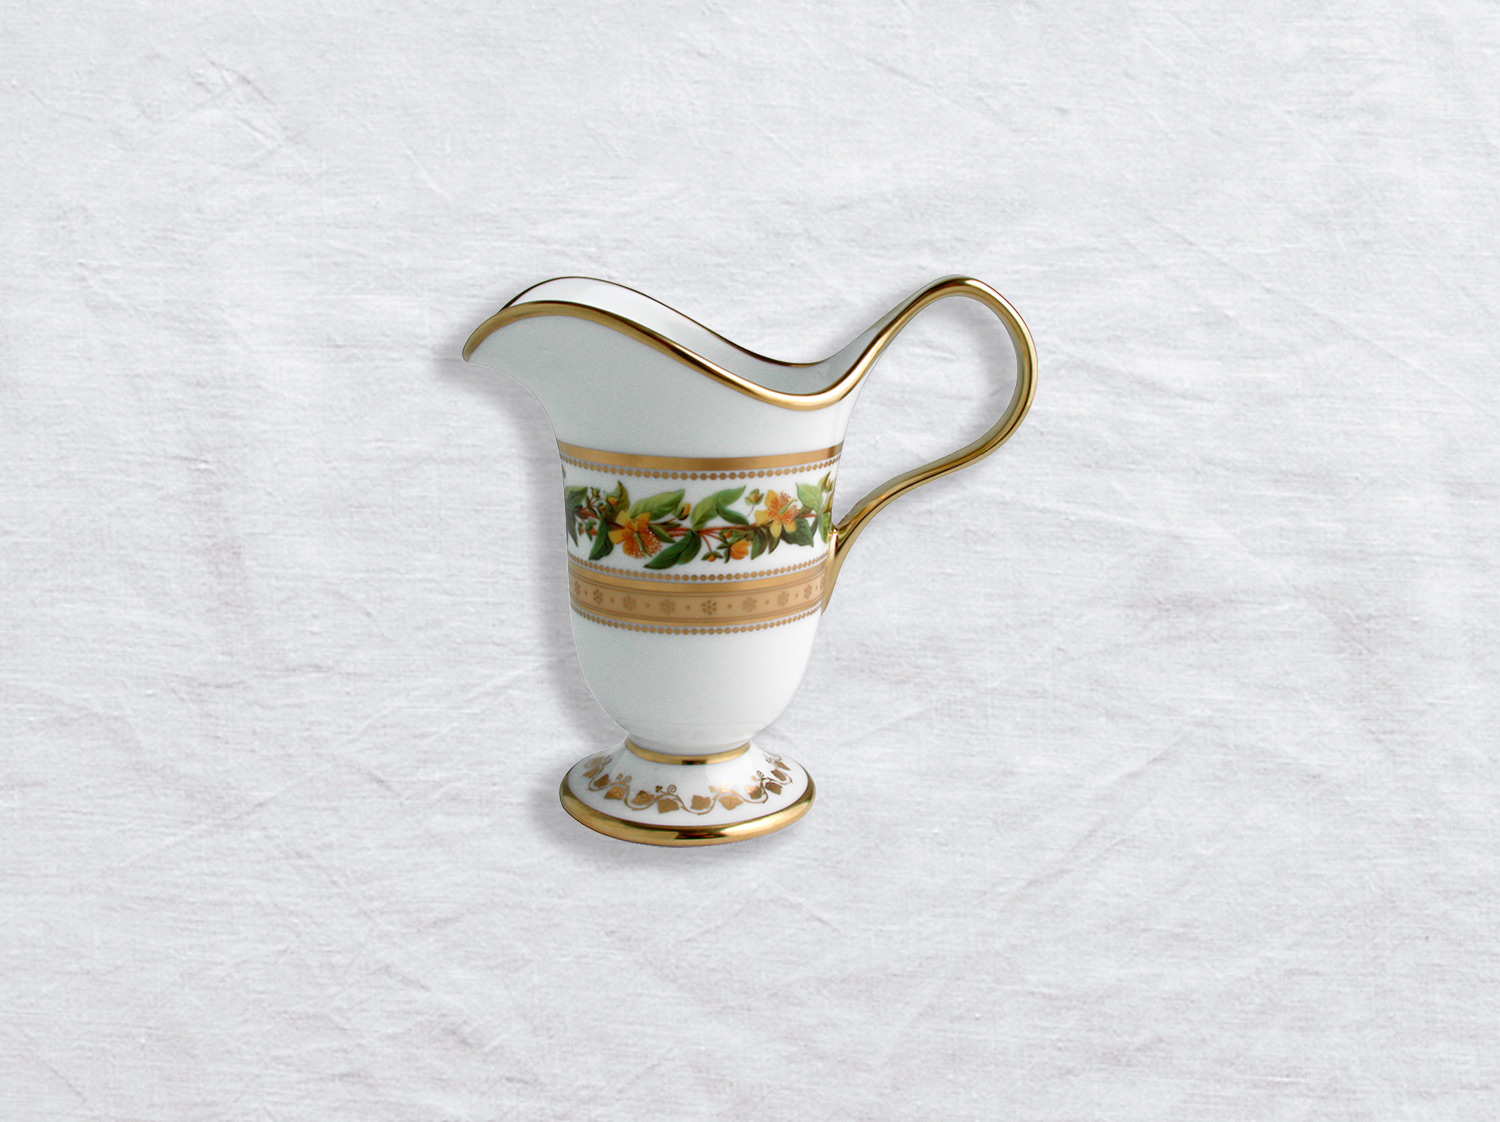 クリーマー 6杯分用 en porcelaine de la collection Botanique Bernardaud